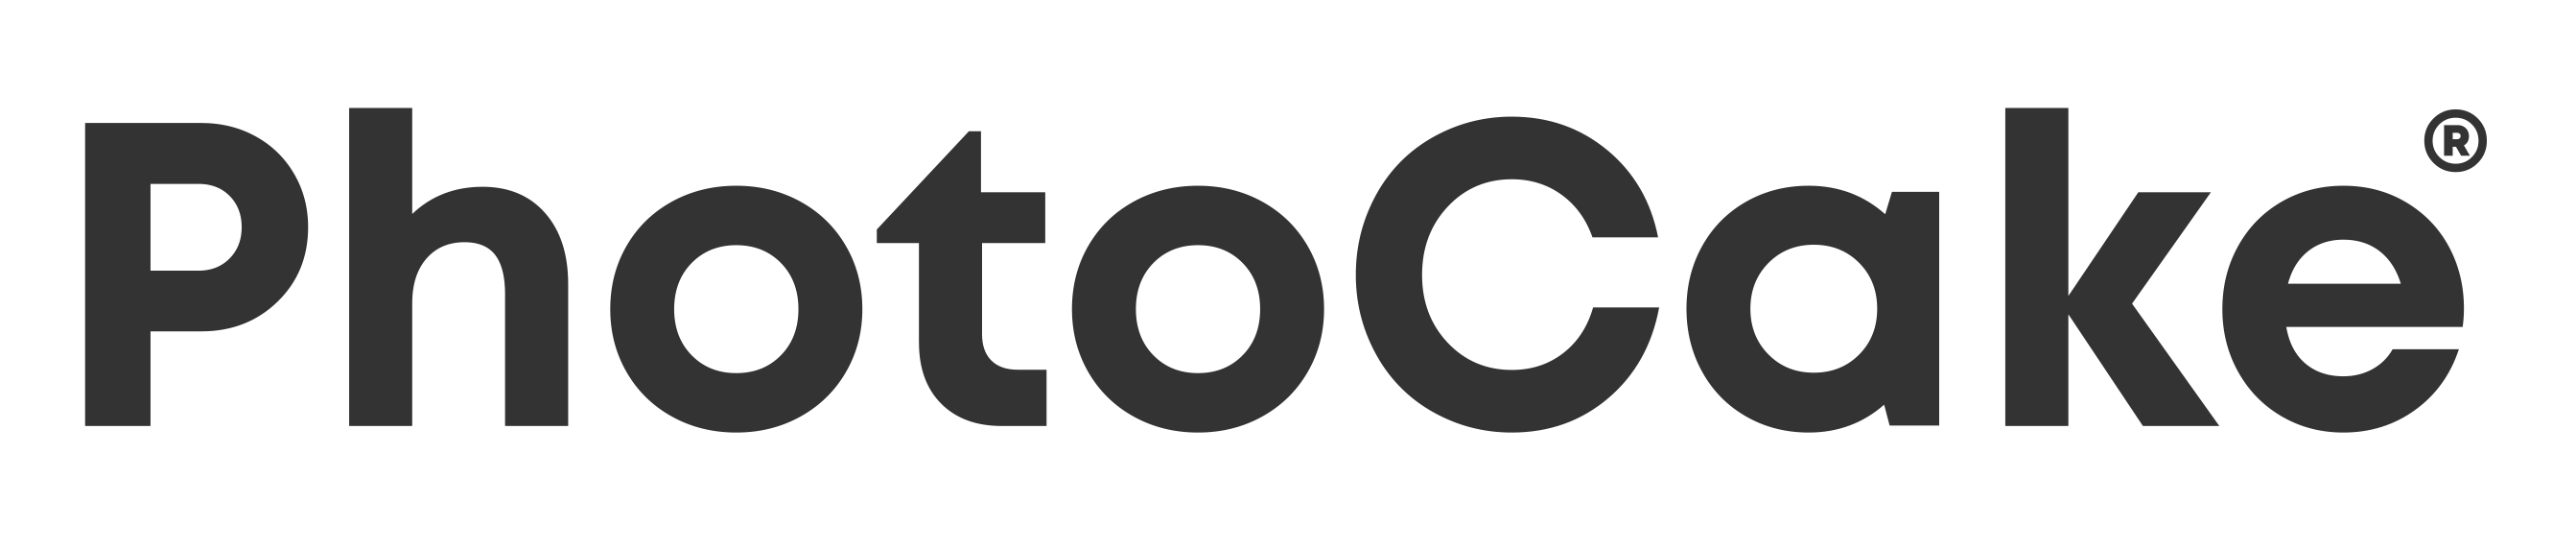 photocake logo